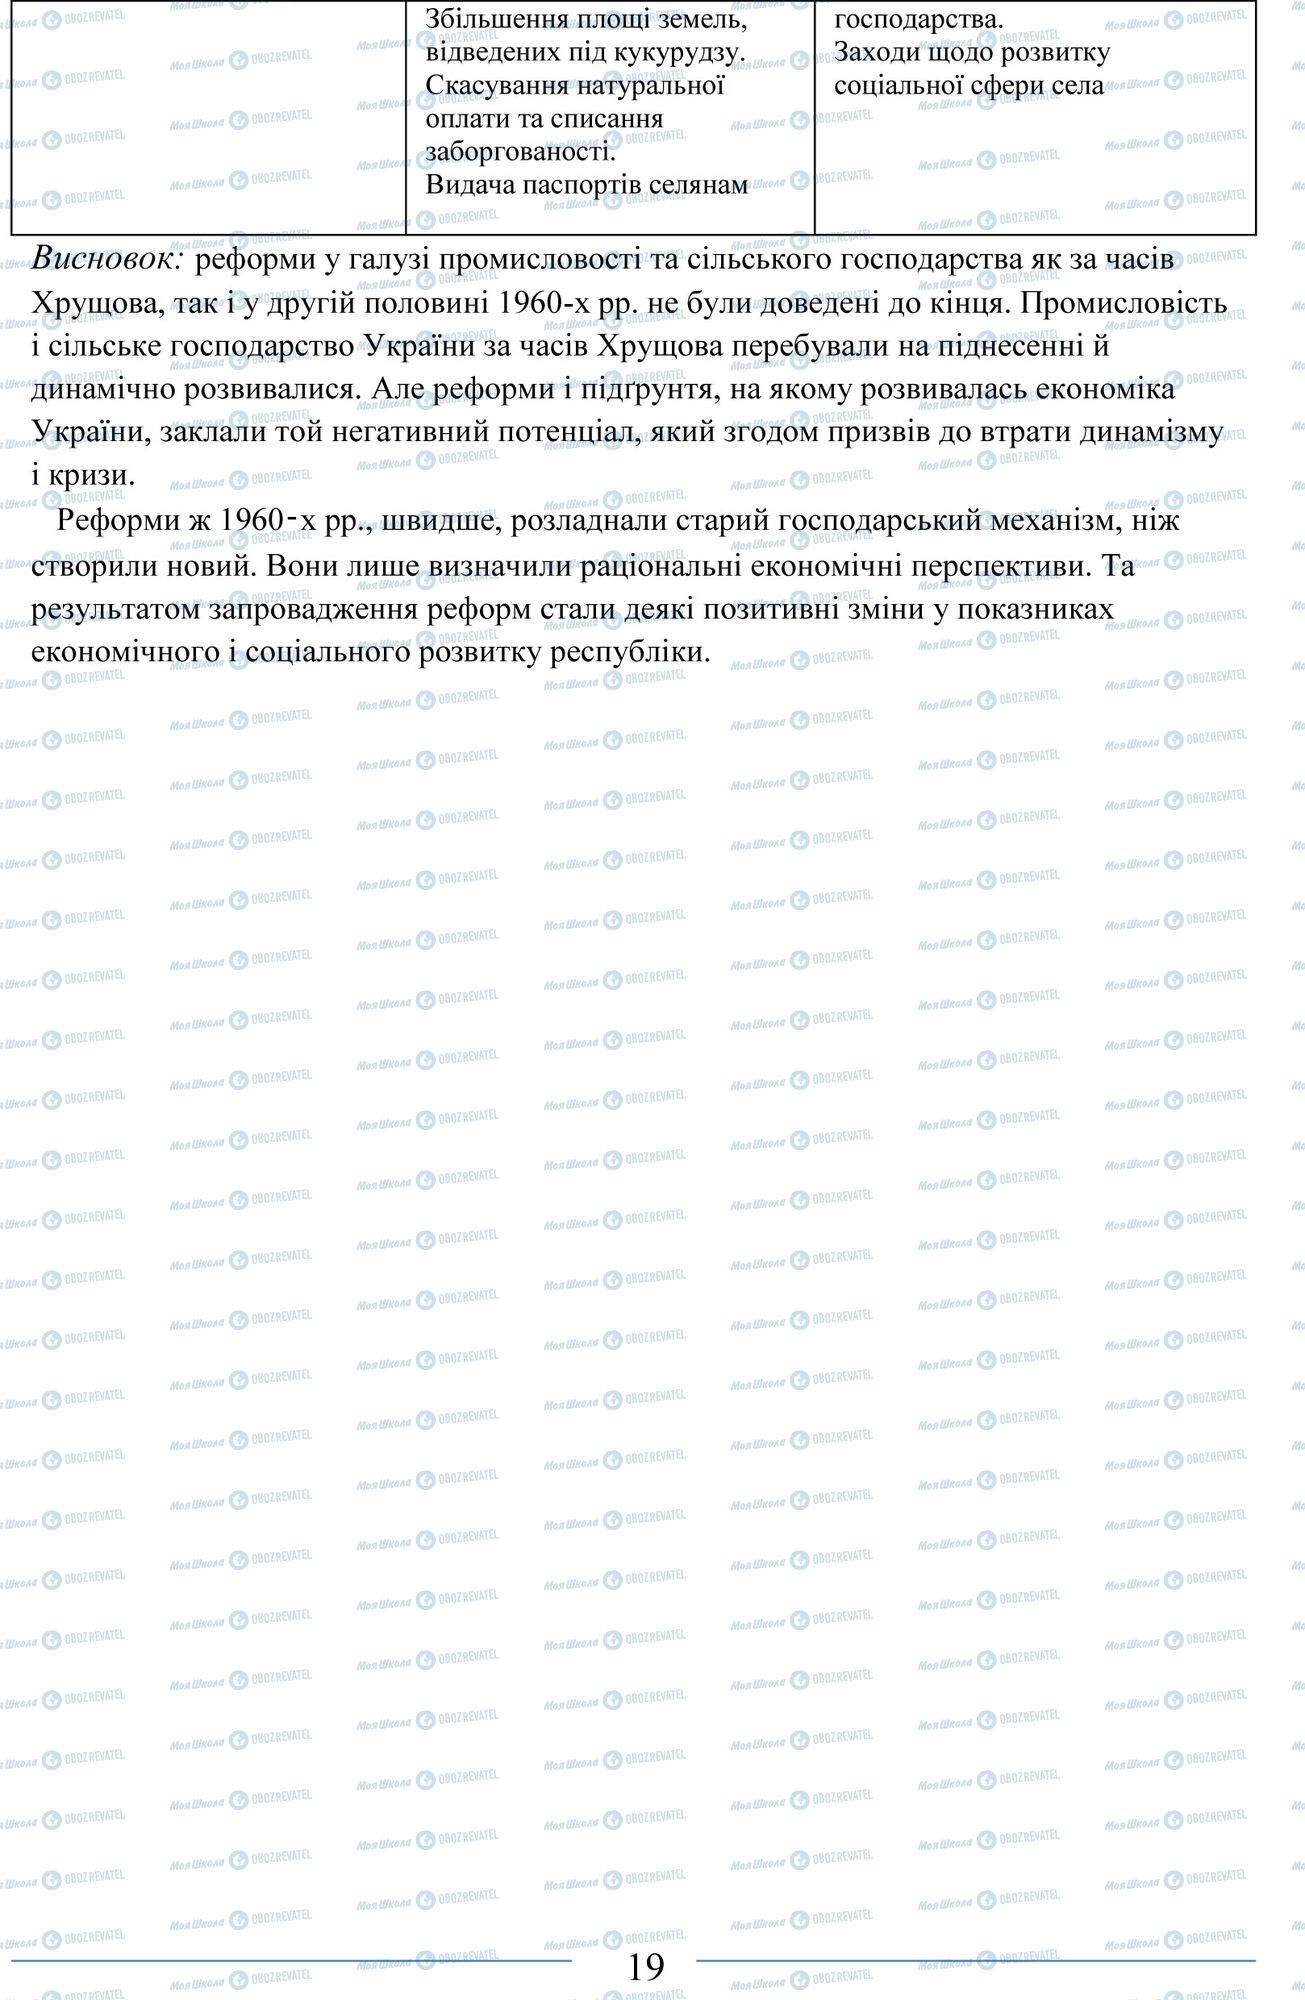 ЗНО История Украины 11 класс страница 19